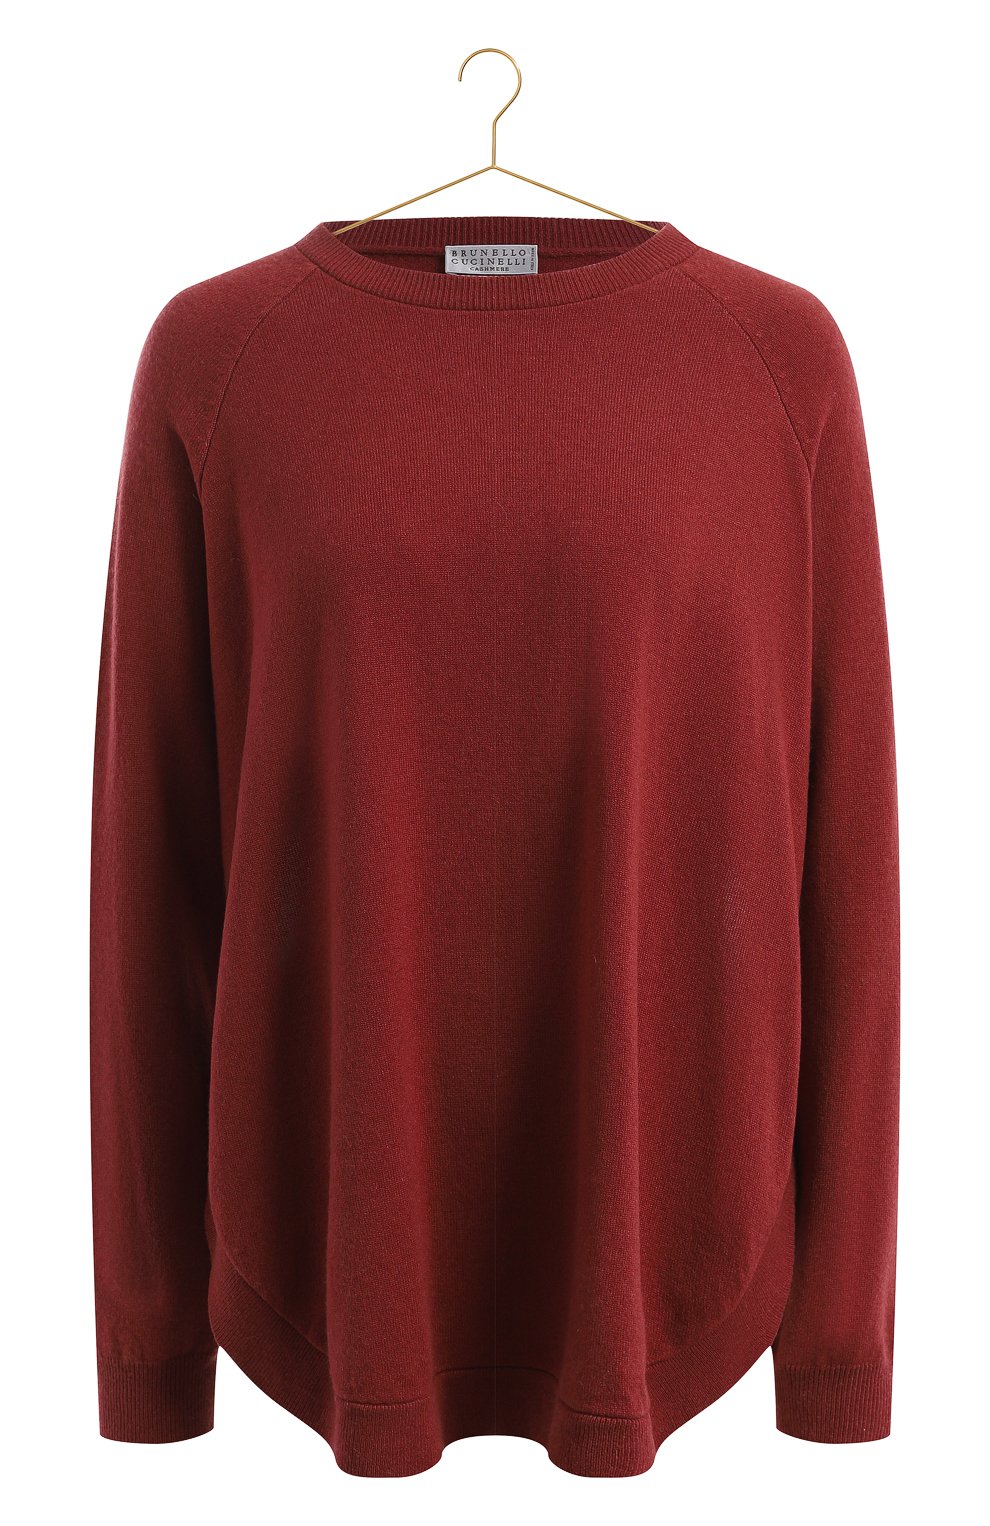 Кашемировый пуловер | Brunello Cucinelli | Коричневый - 1